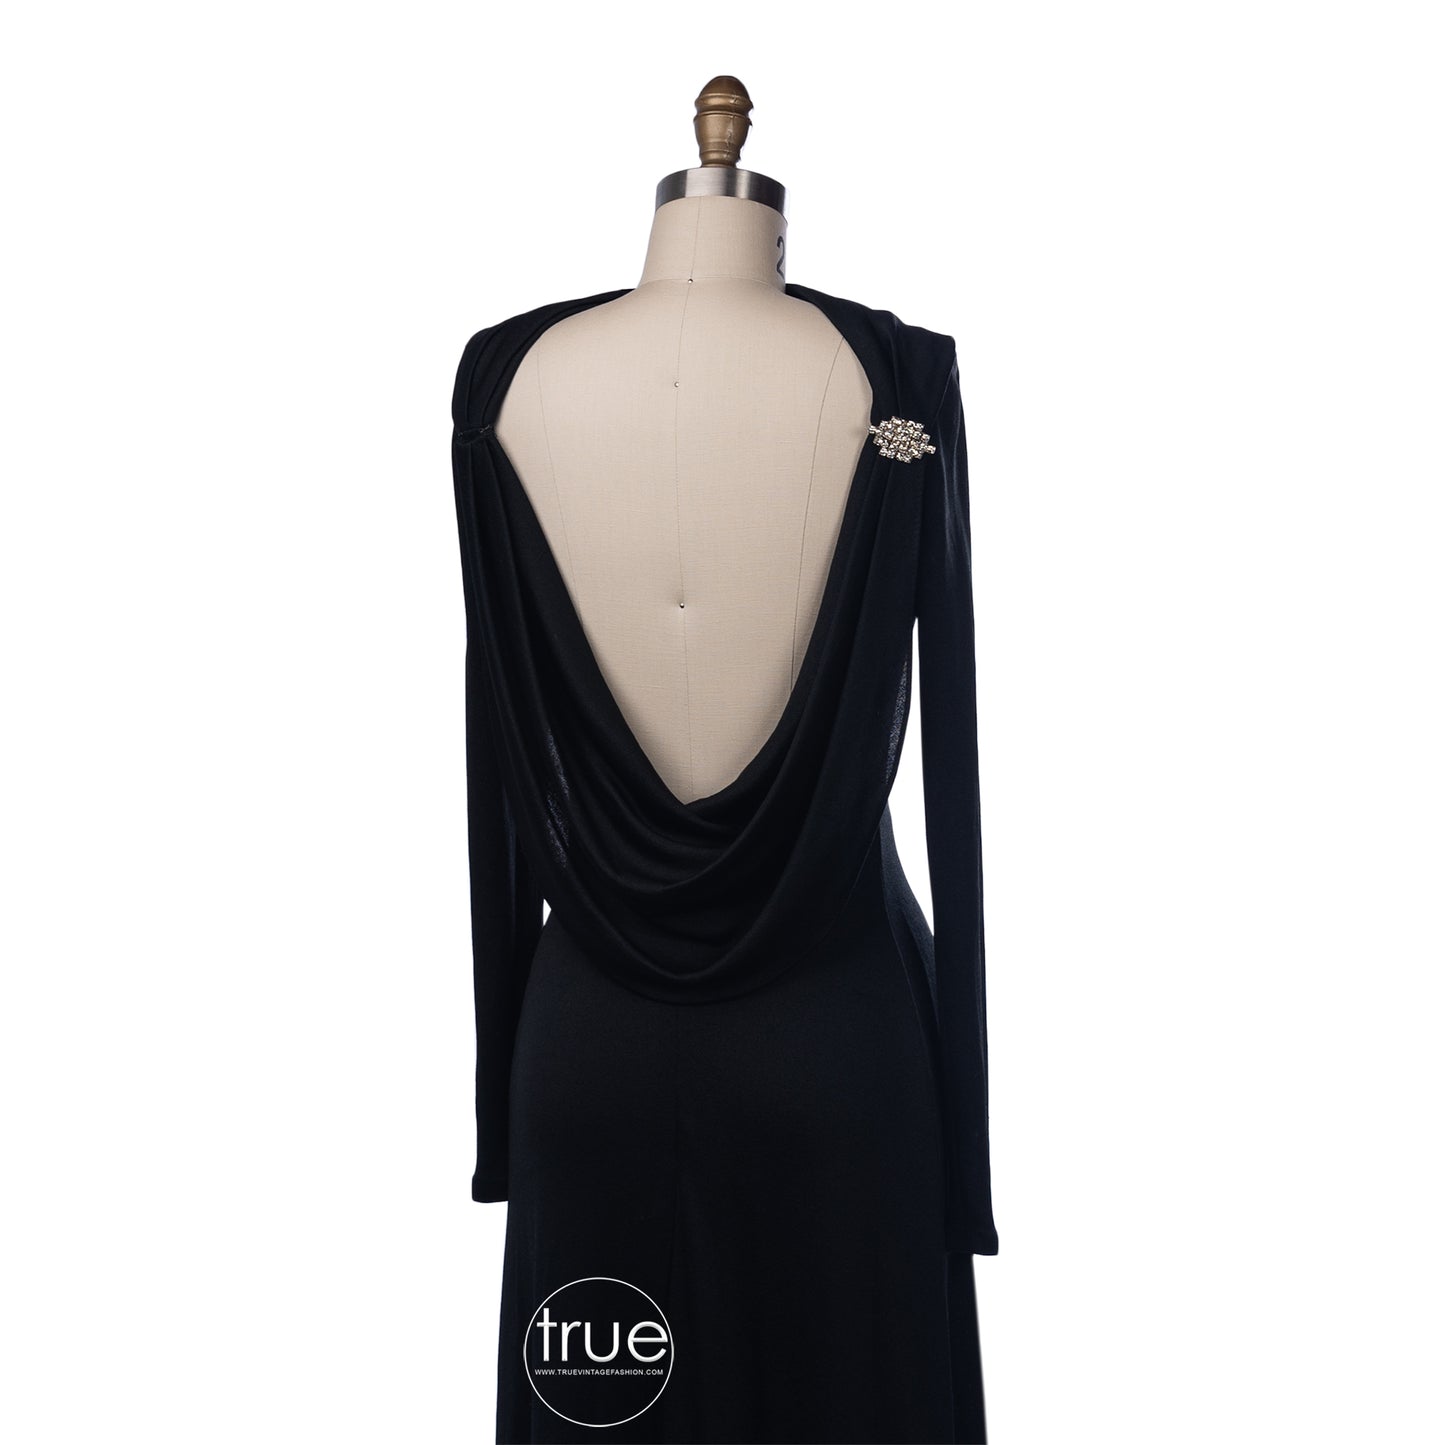 vintage 1960's dress ...couture designer Luis Estévez black draped backless cocktail dress